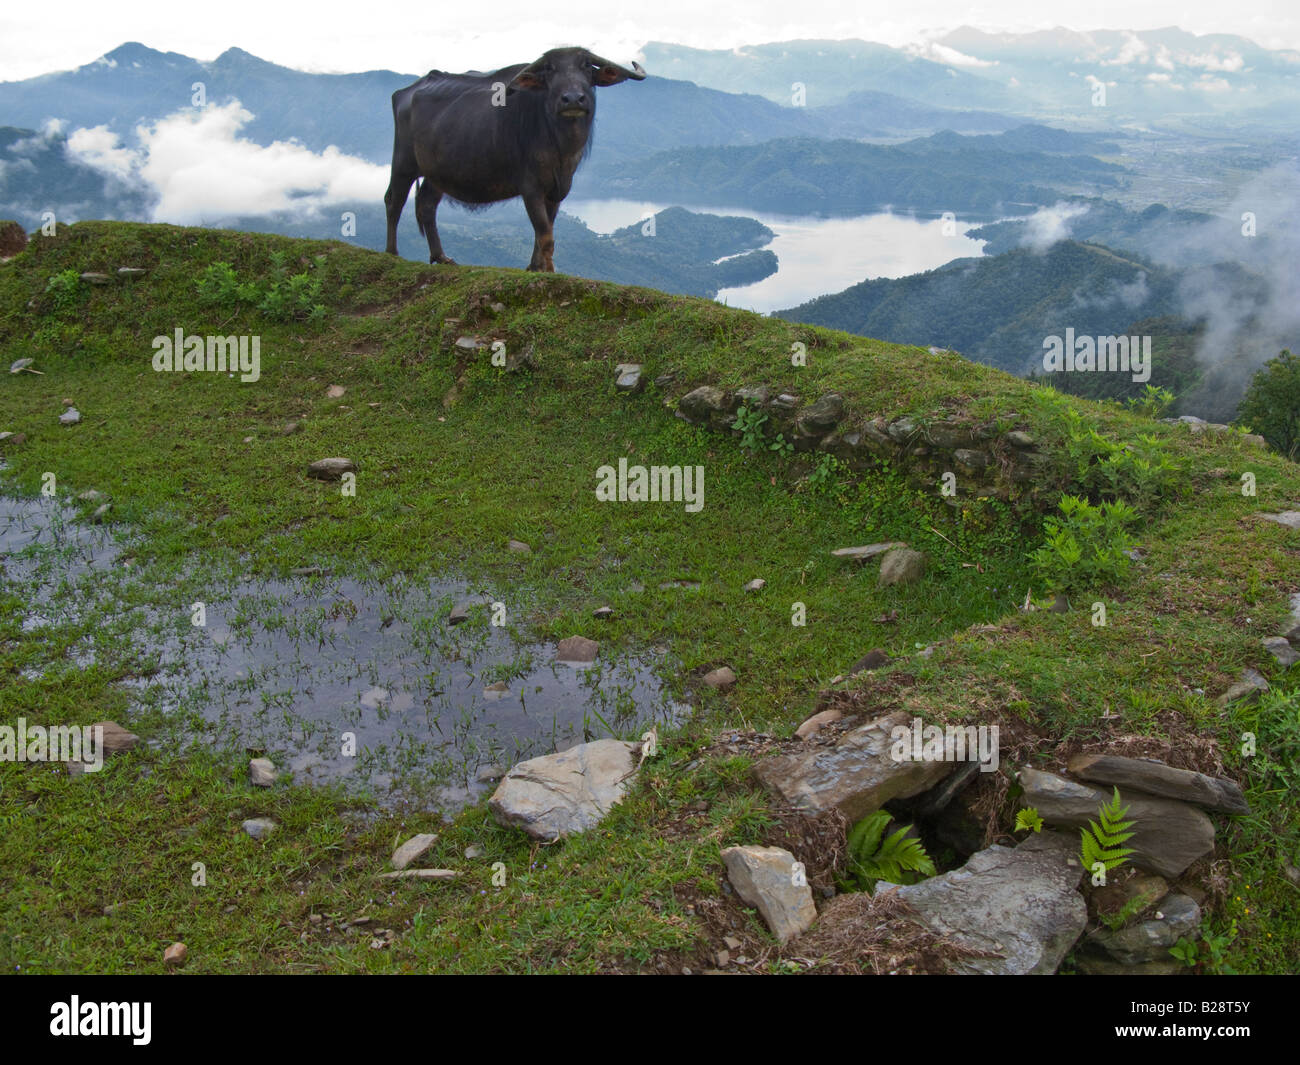 Water buffalo grazing Himalayas mountains Pokhara Nepal Stock Photo